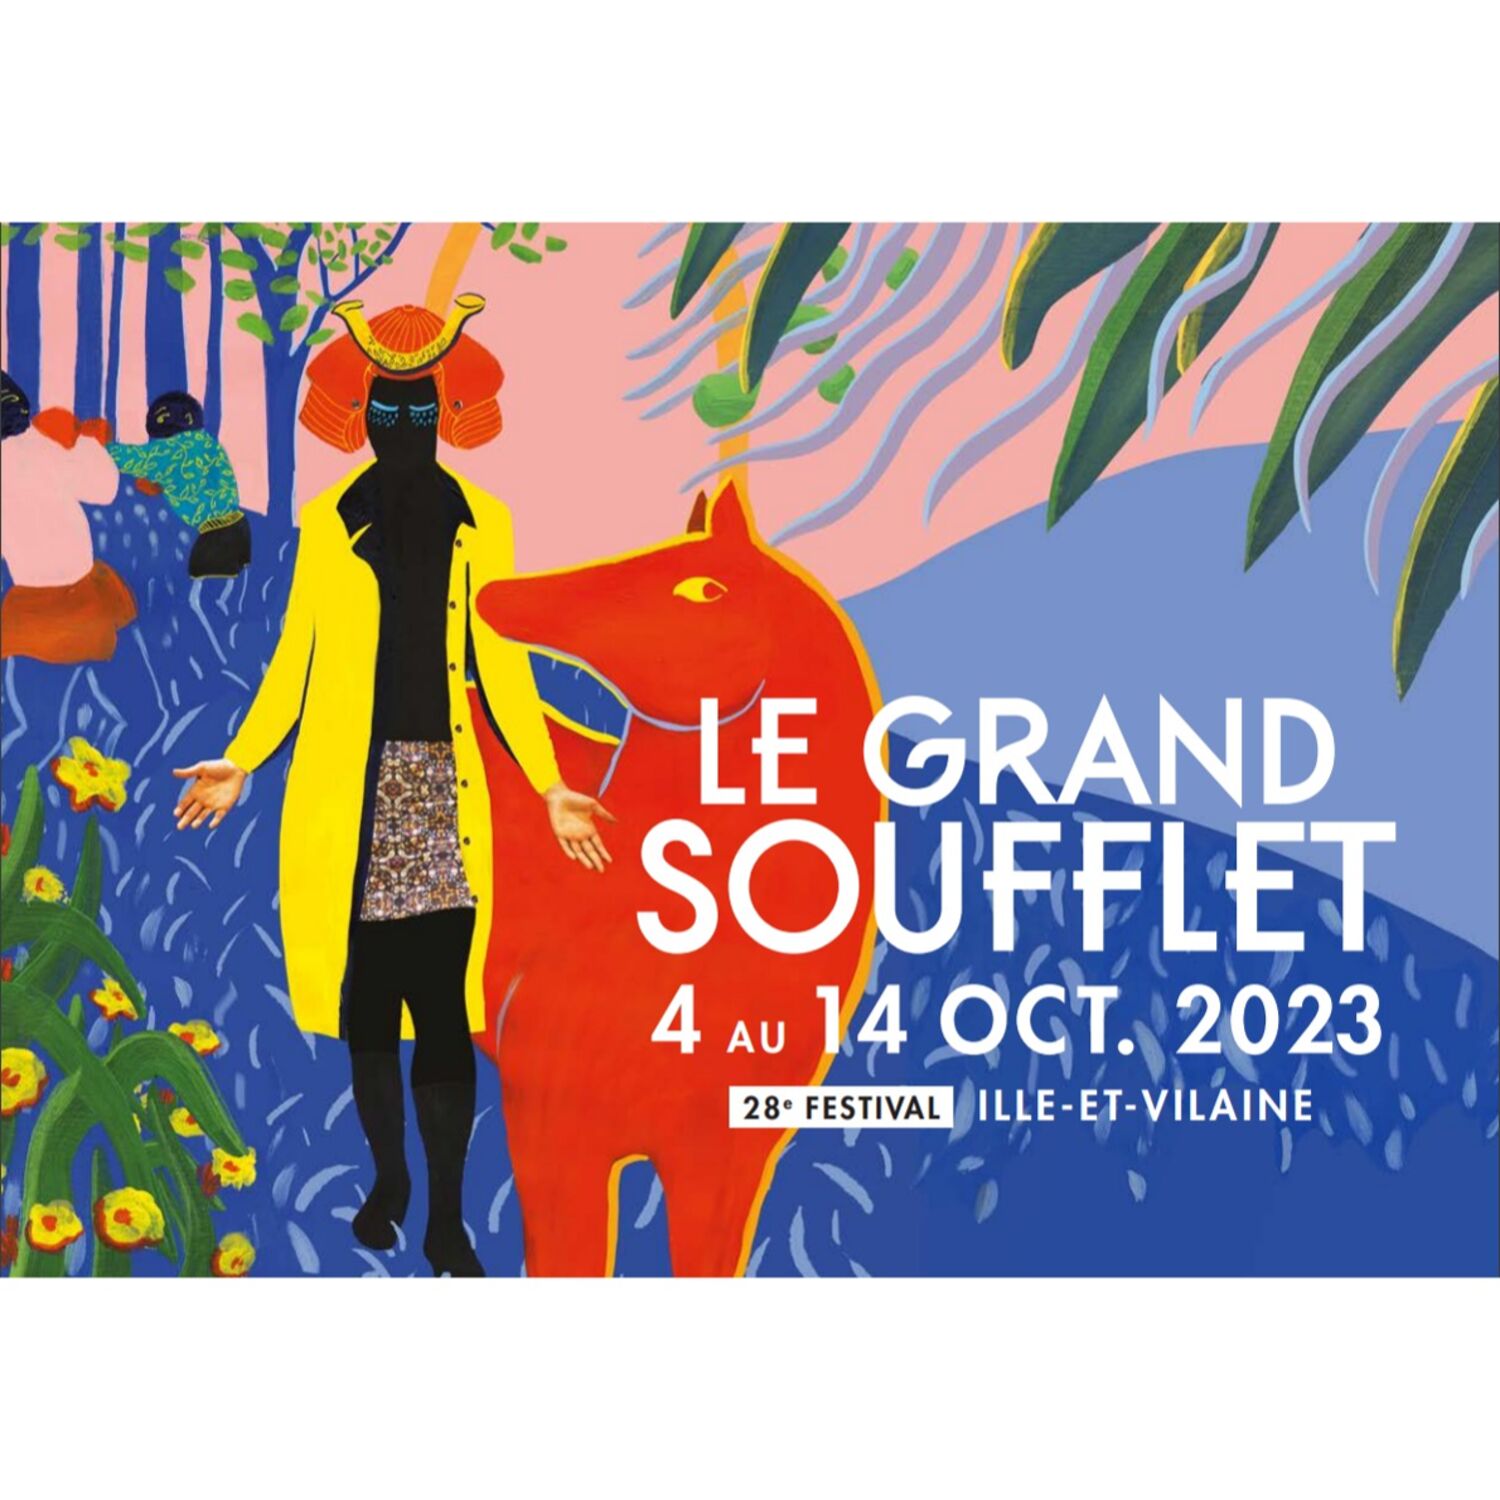 Le festival du grand soufflet commence le 4 octobre en Ille et Vilaine